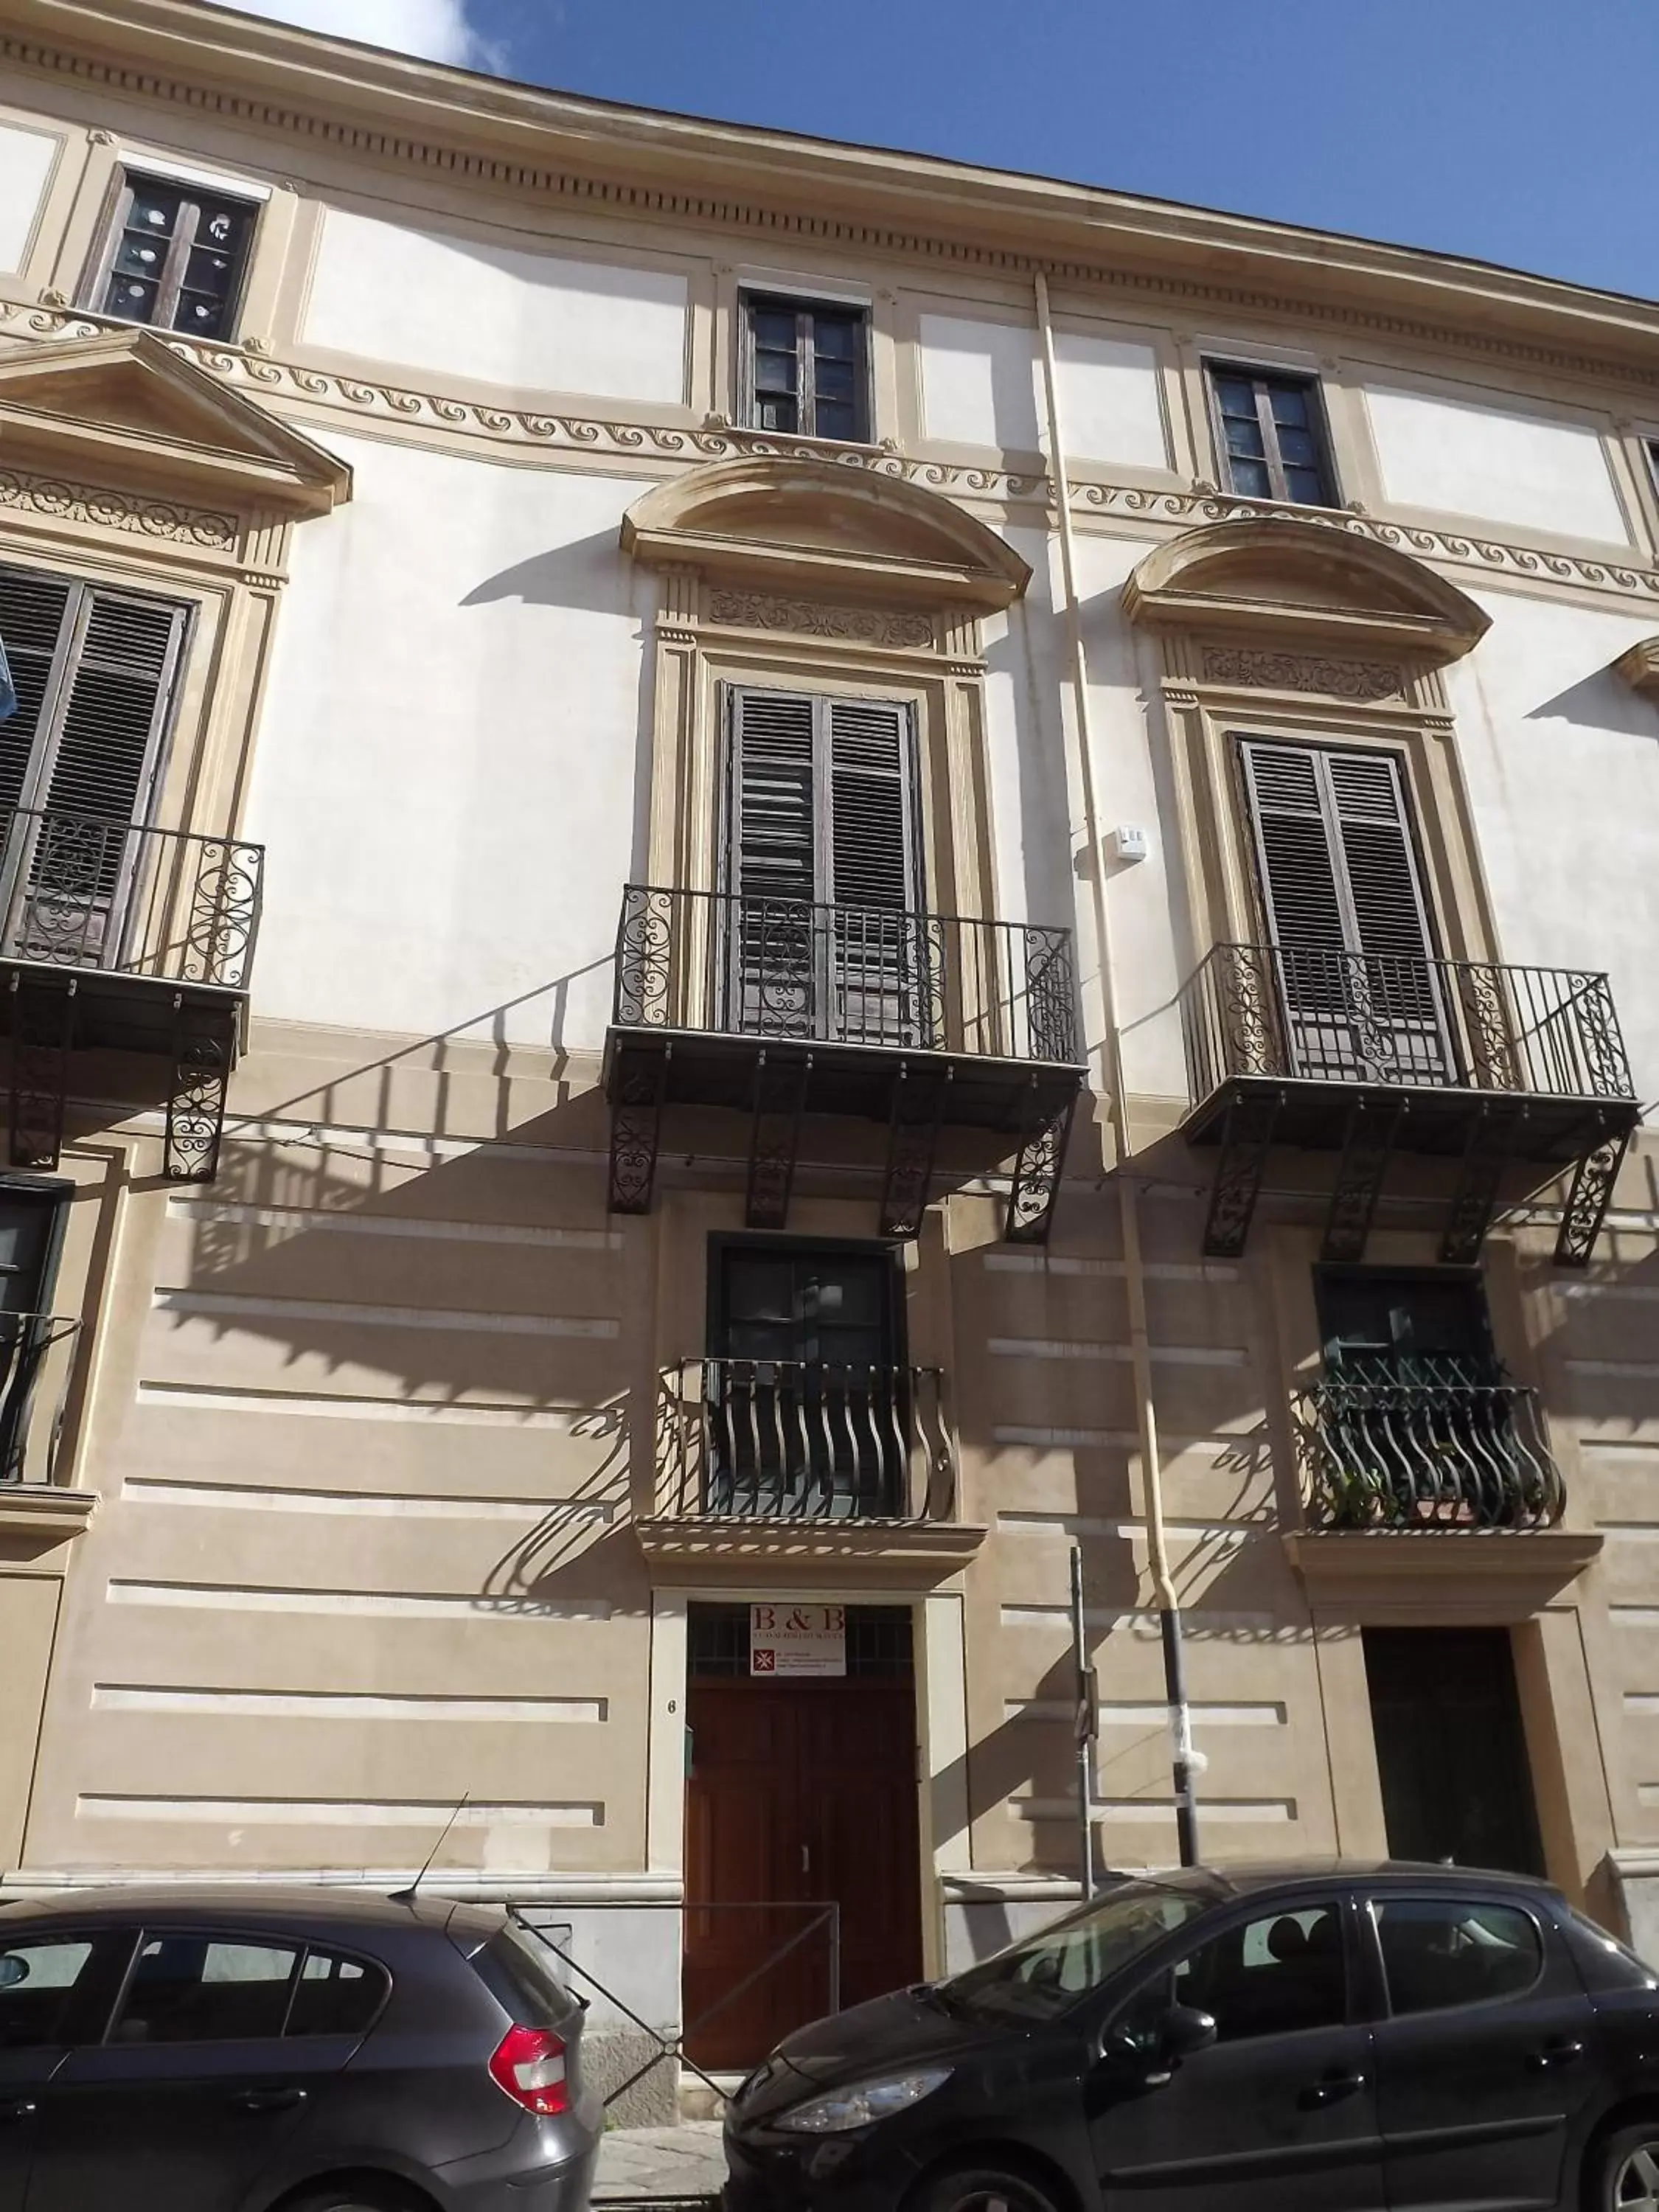 Facade/entrance, Property Building in I Cavalieri di Malta